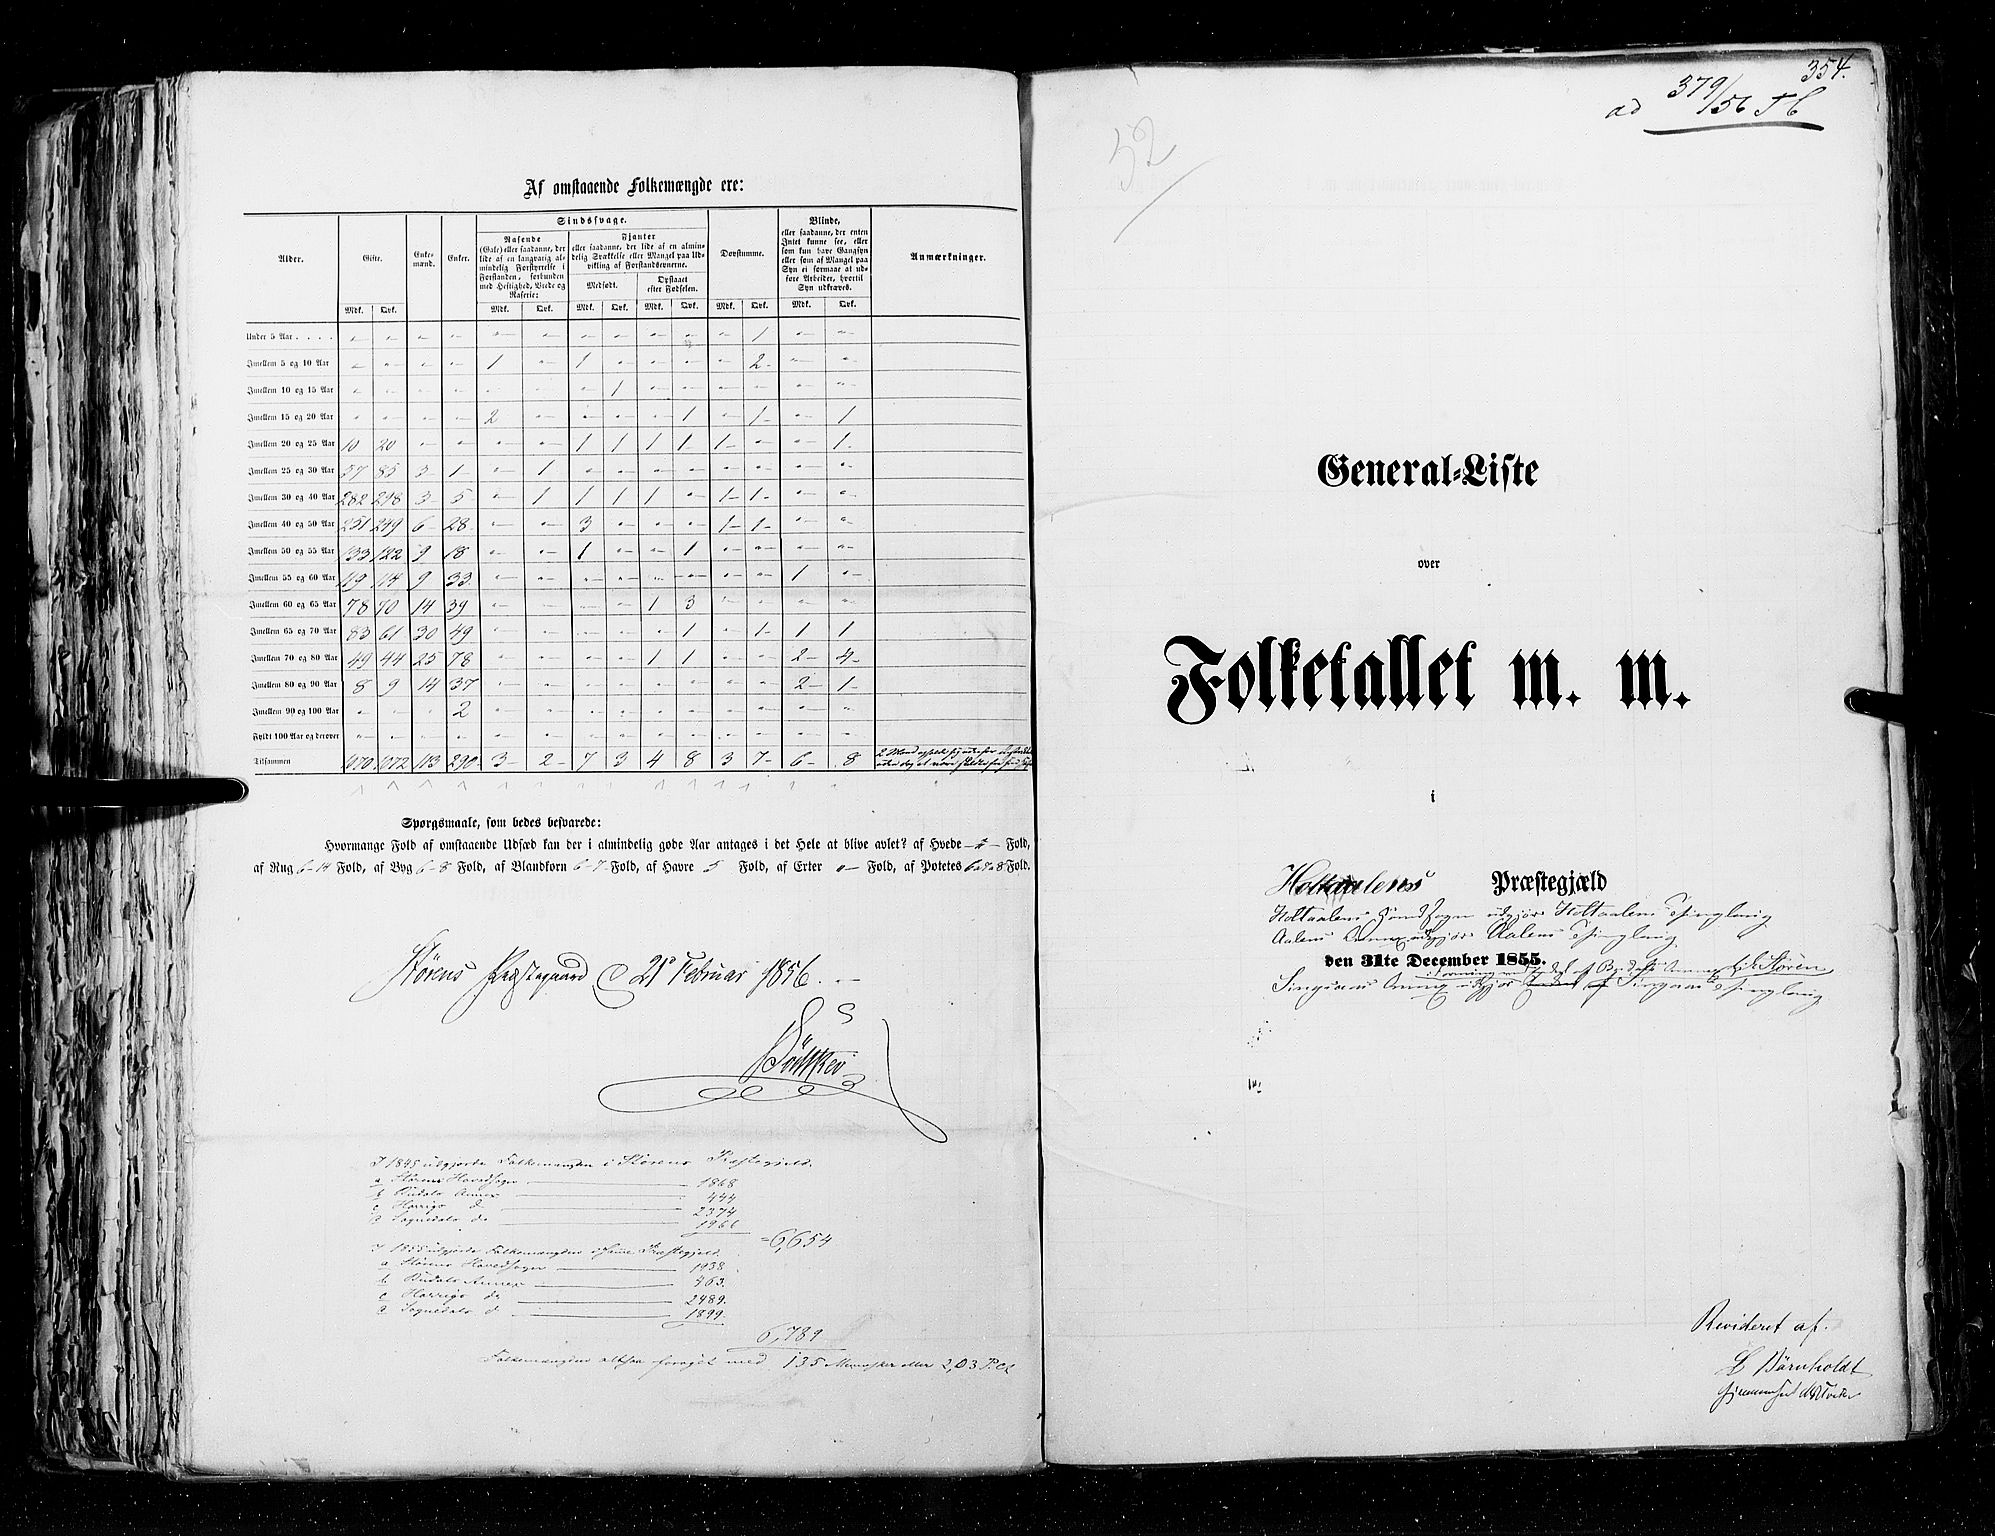 RA, Census 1855, vol. 5: Nordre Bergenhus amt, Romsdal amt og Søndre Trondhjem amt, 1855, p. 354